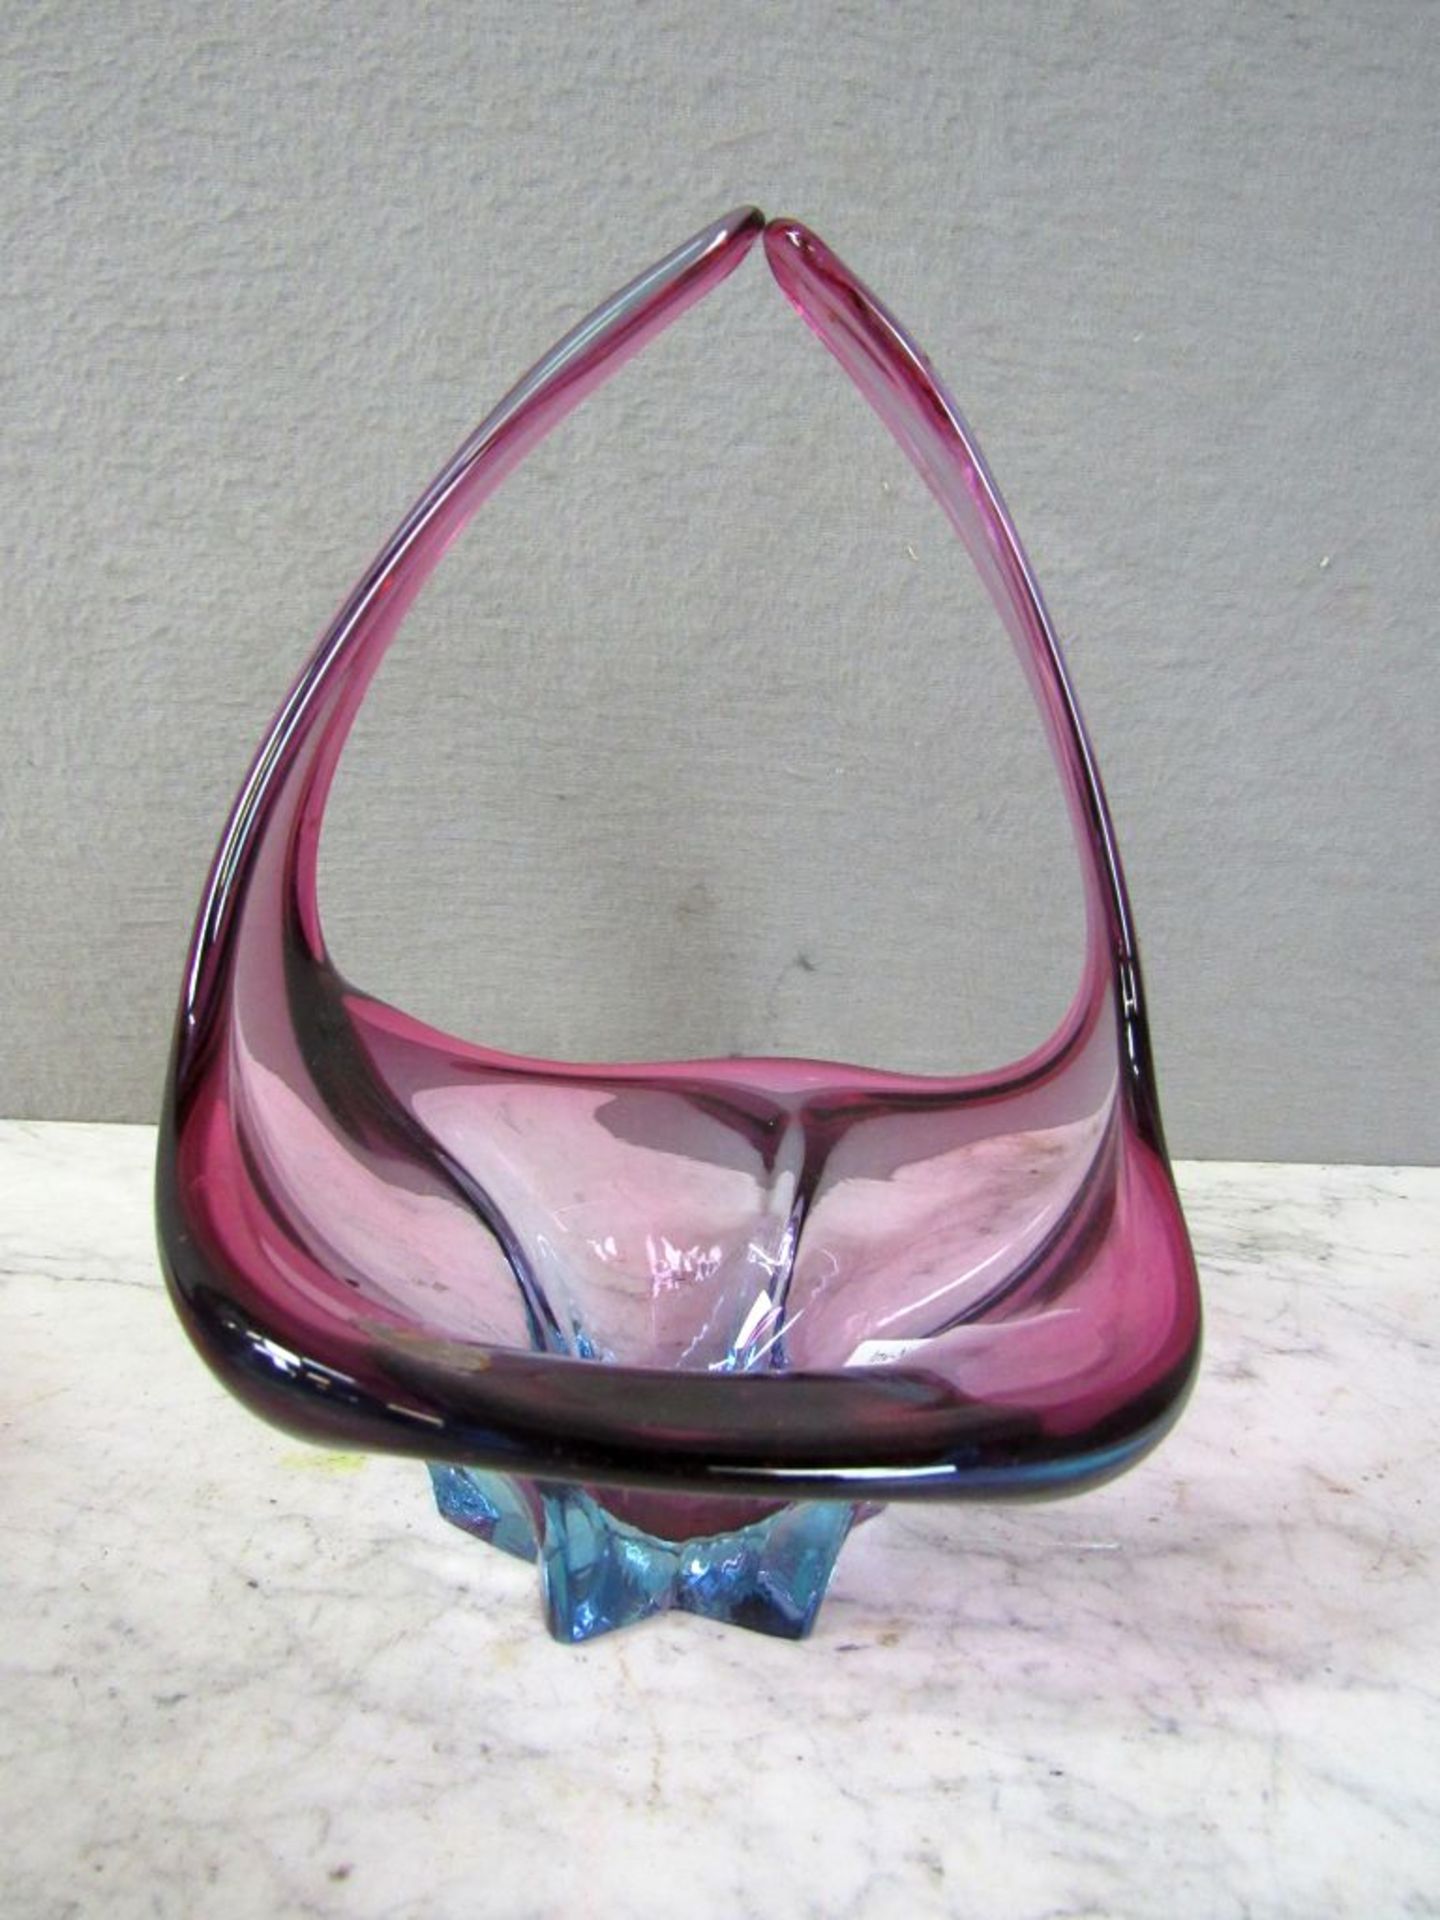 Murano Glasschale gelabelt + Beigabe - Image 3 of 8